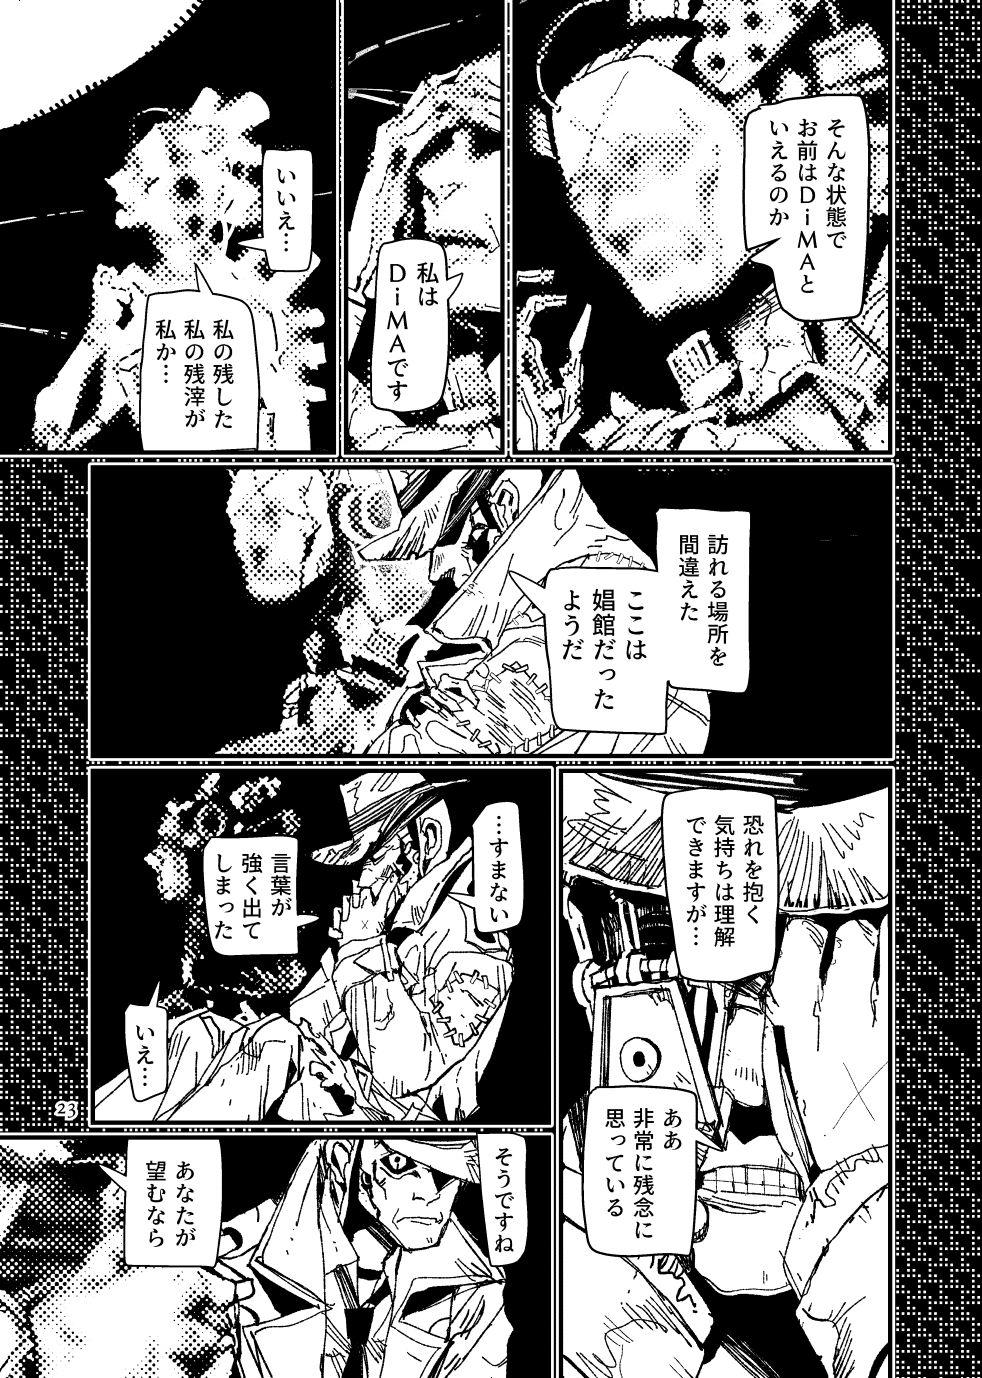 [Tanokura] FO4 [R18] Dimaniku Manga 22